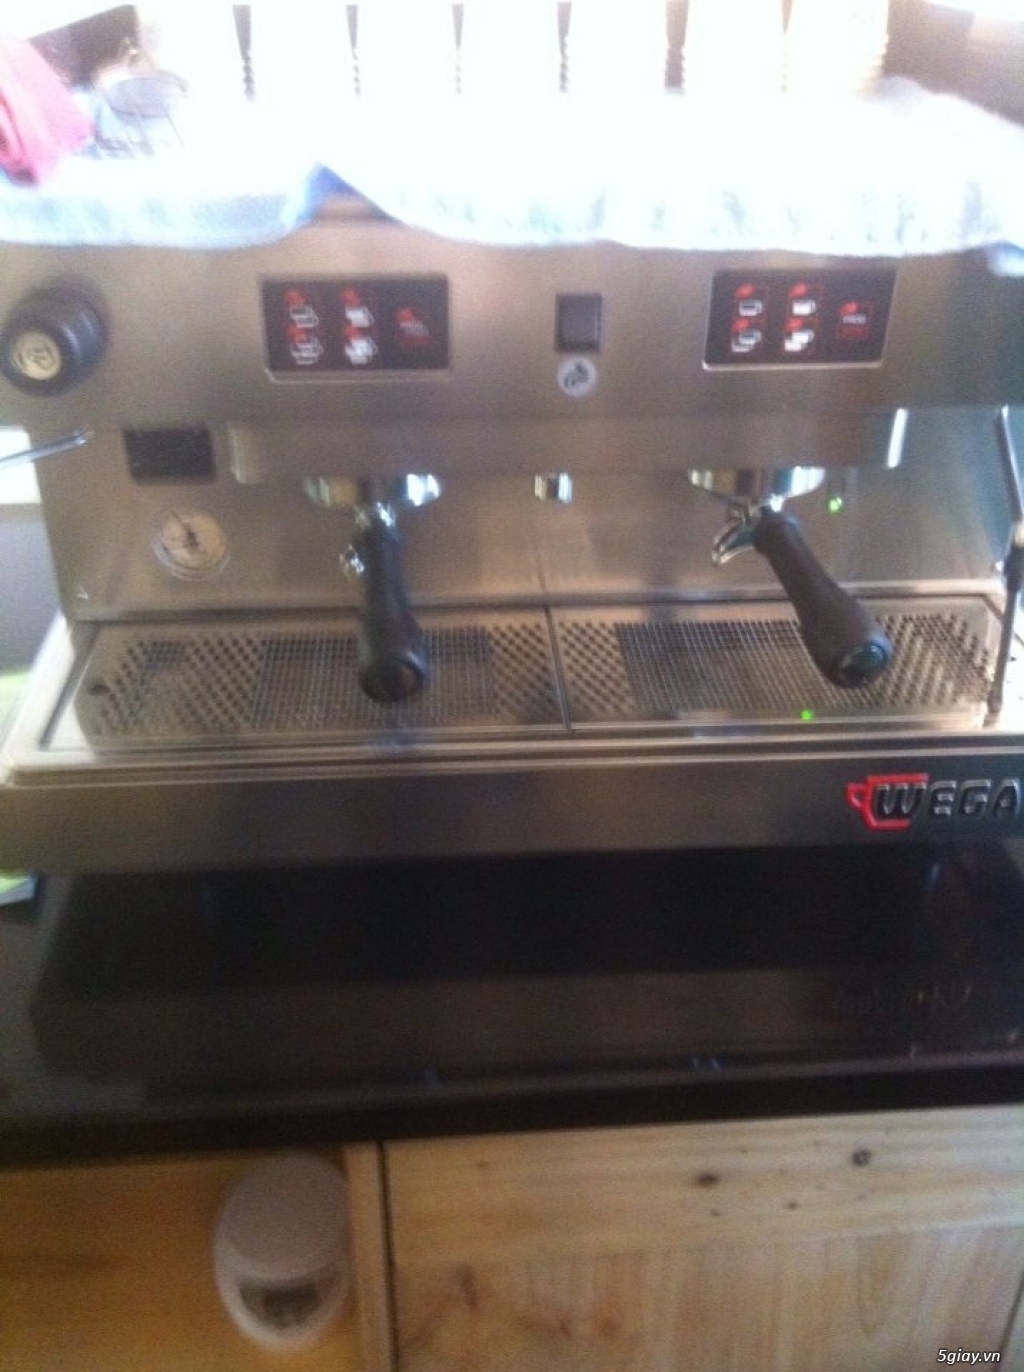 Thanh Lý máy pha cà phê Feama E98 Auto Cũ giá rẻ - 2